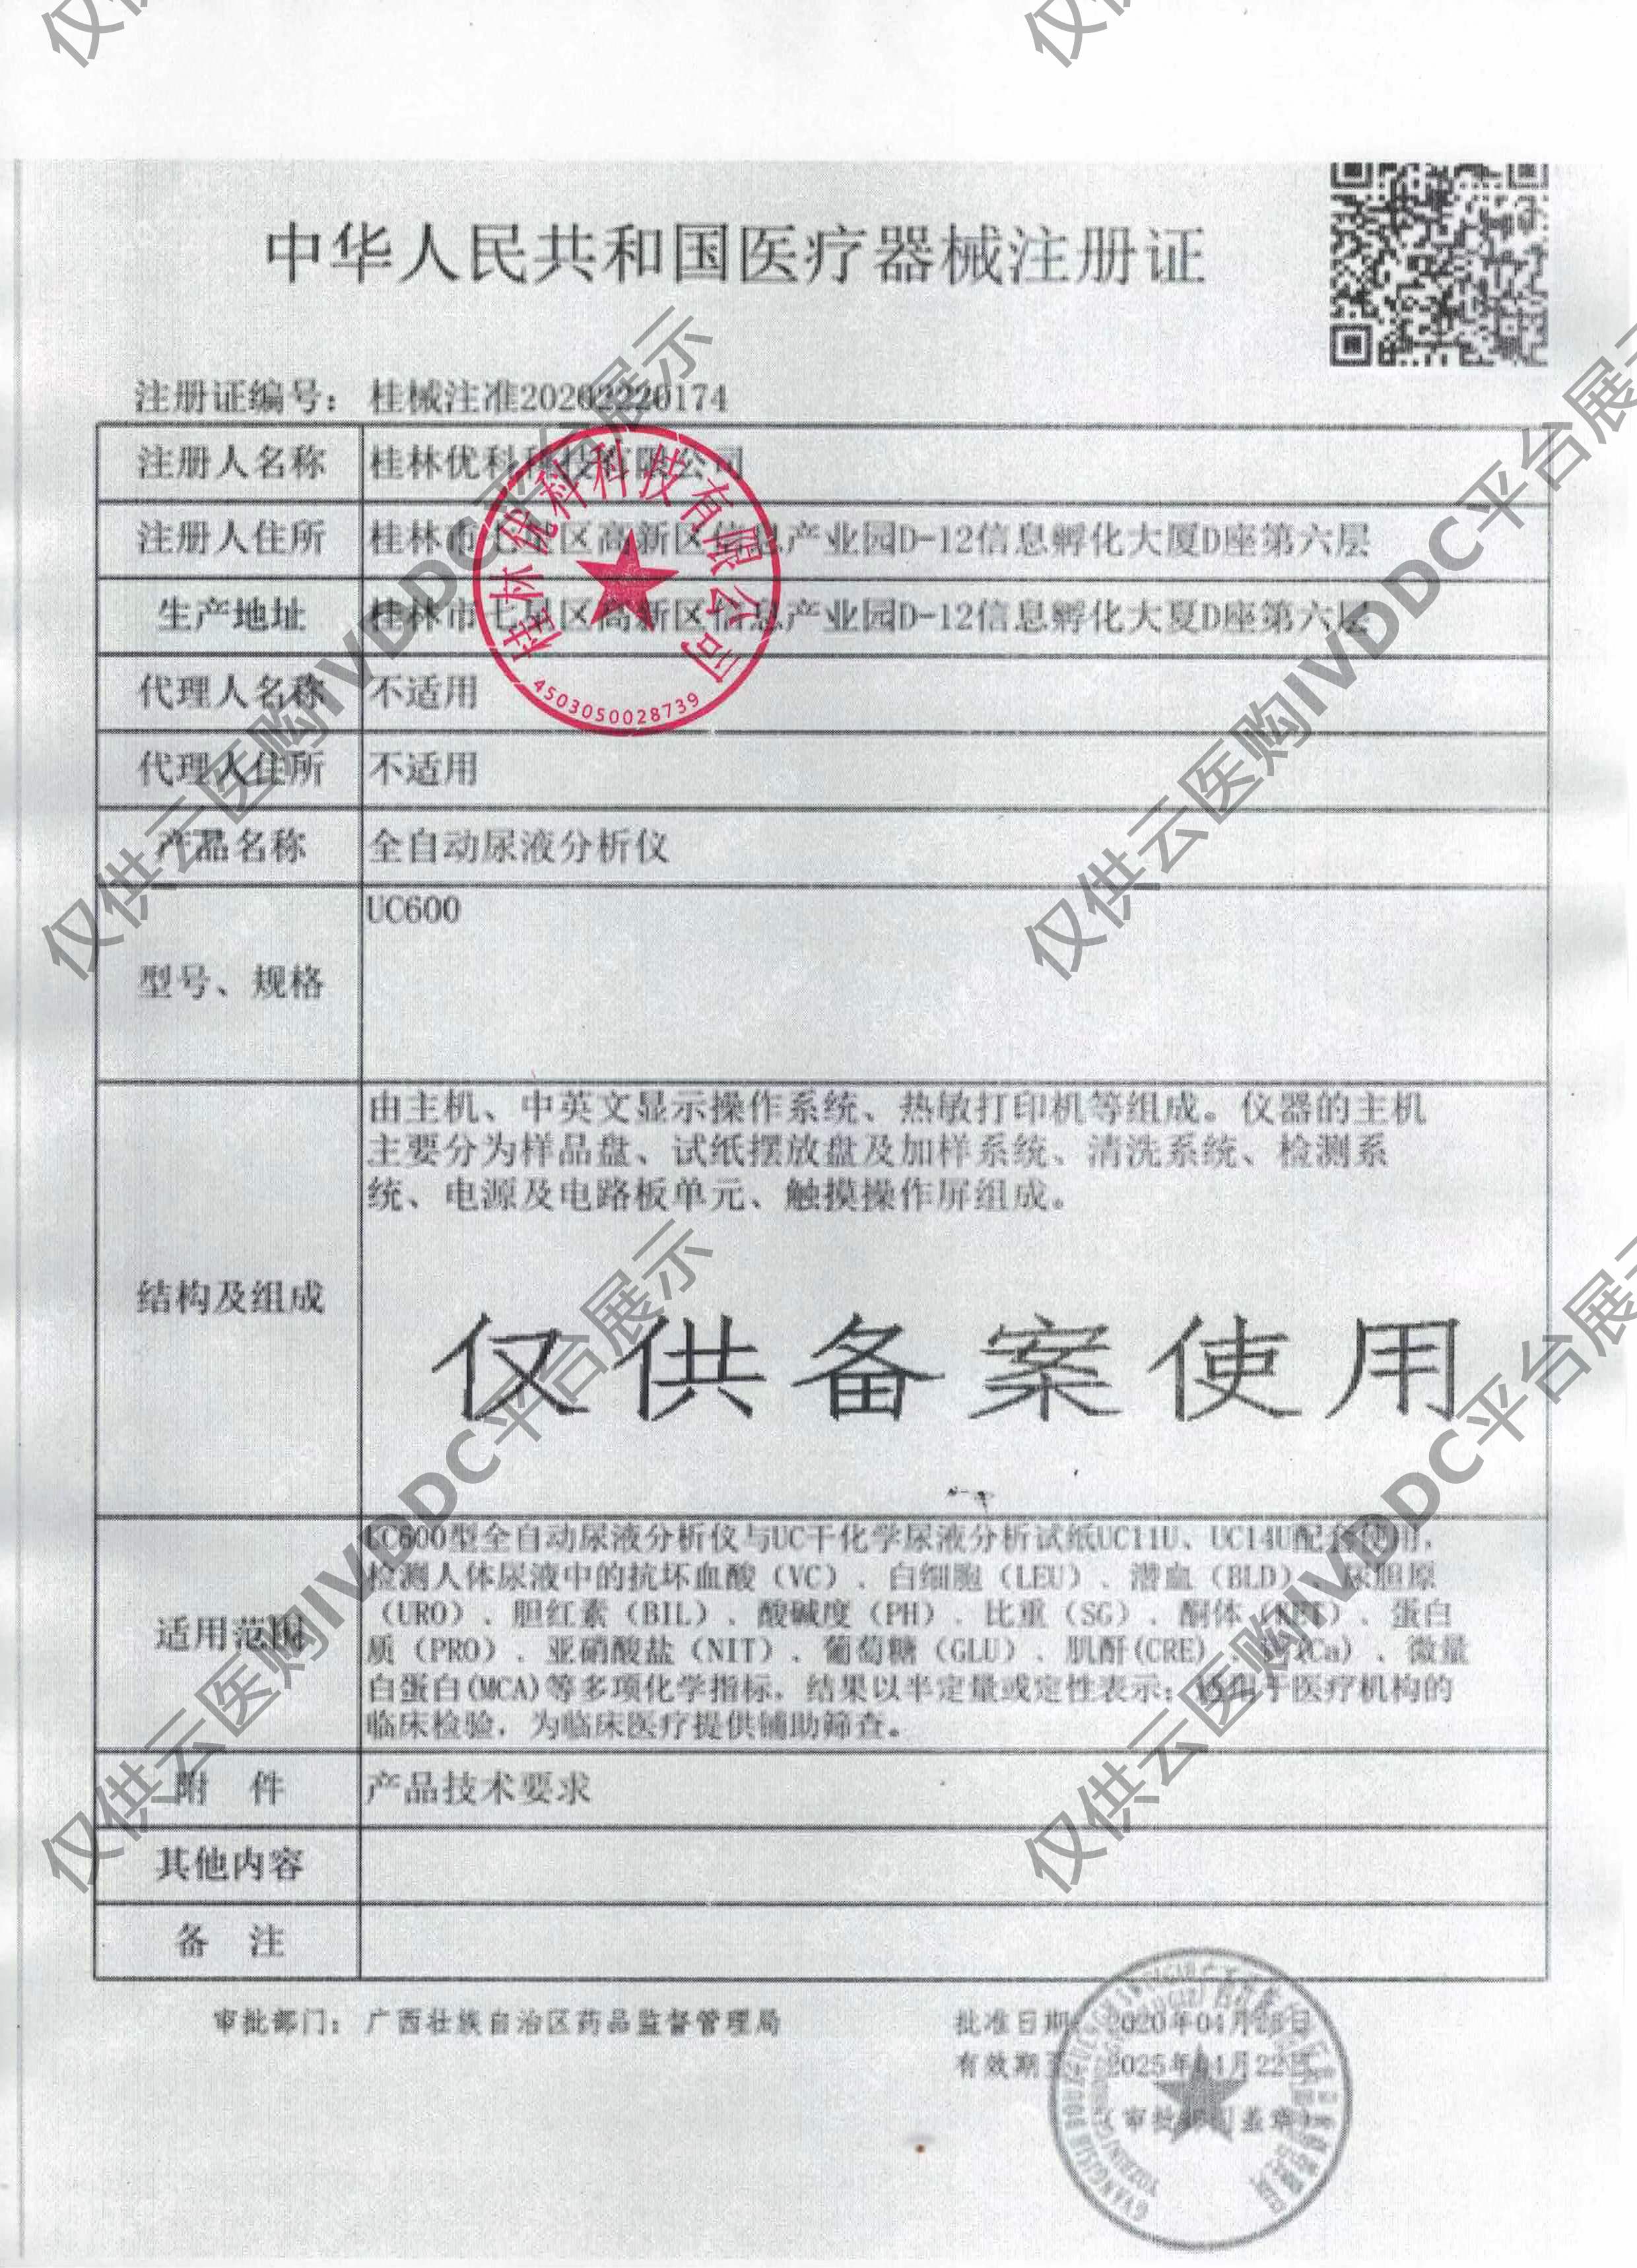 【优科】全自动尿液分析仪UC600注册证